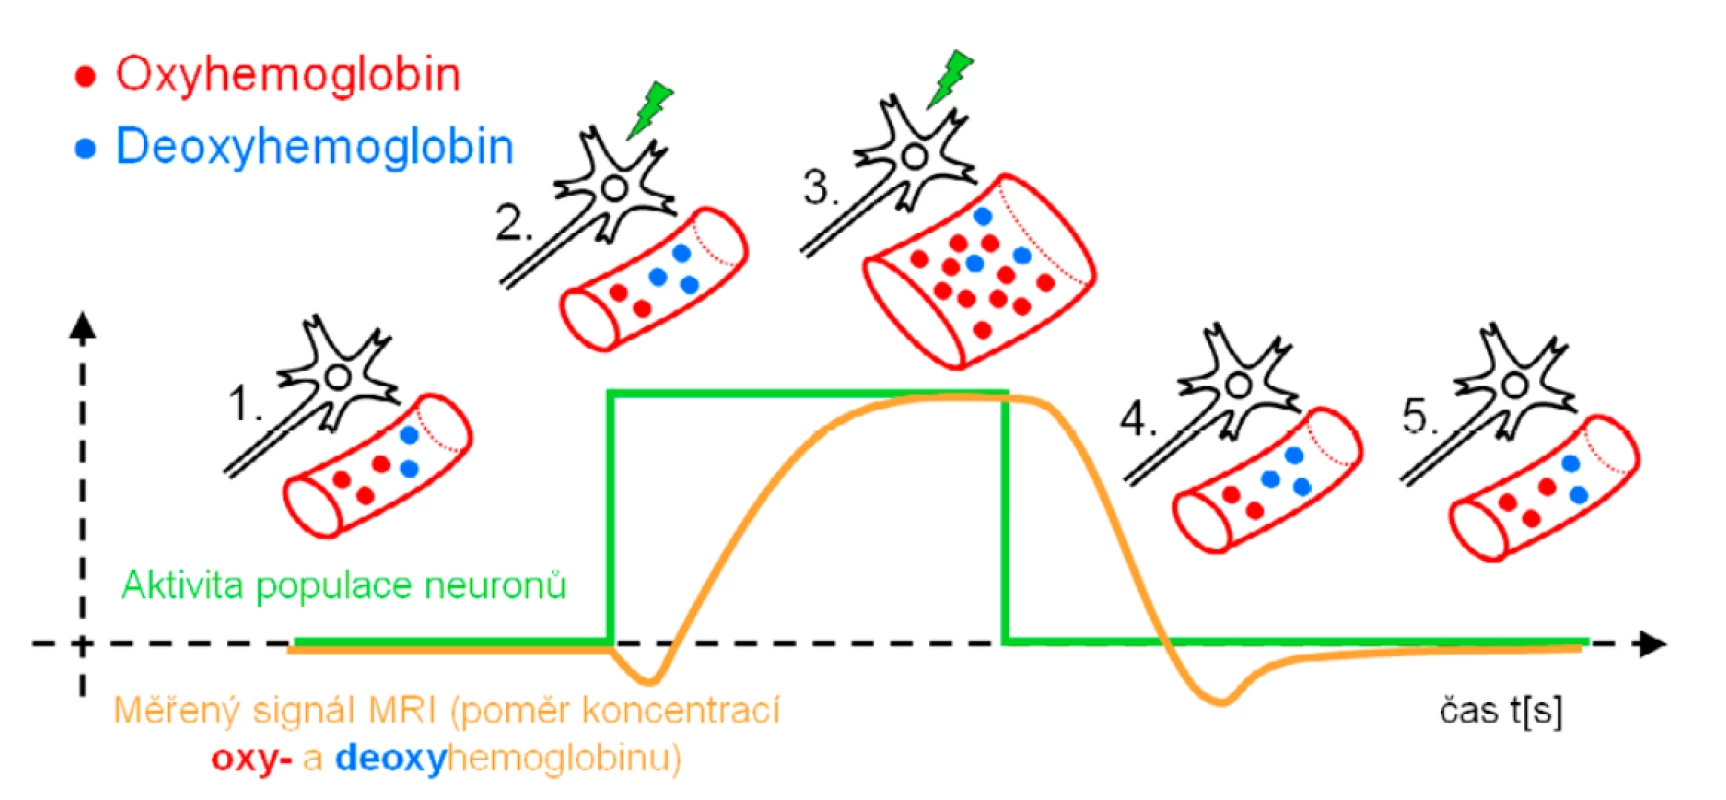 Schéma časového záznamu aktivace neuronu, změn prokrvení (perfuze) v jeho blízkosti, změn poměrů koncentrací
oxy- a deoxyhemoglobinu a odpovídajících změn měřeného signálu pomocí MR